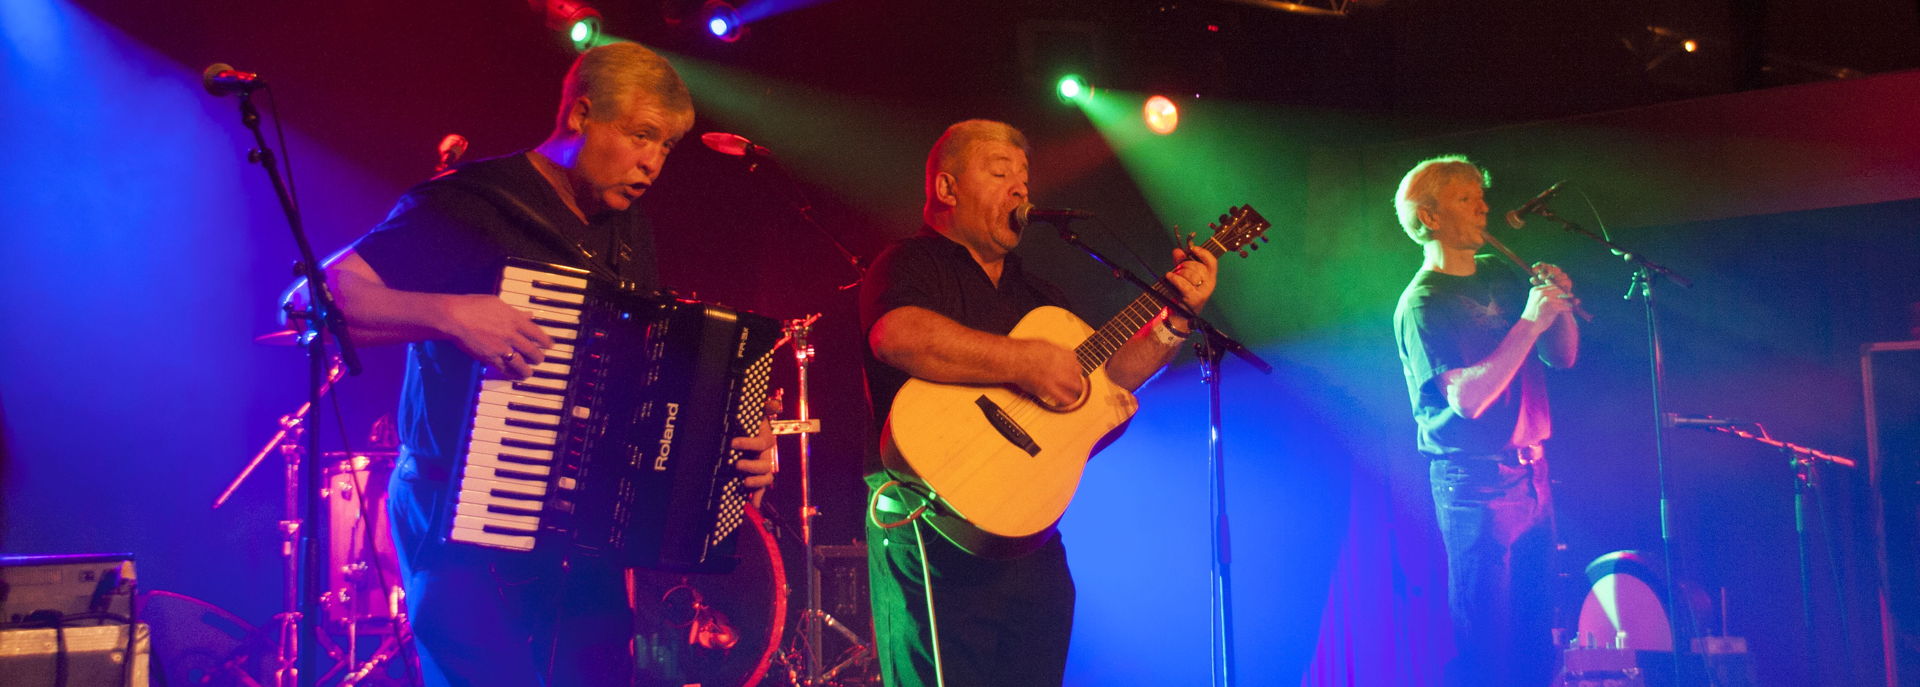 Dubh Linn speelt ieder jaar op het Irish Festival in De Tamboer.